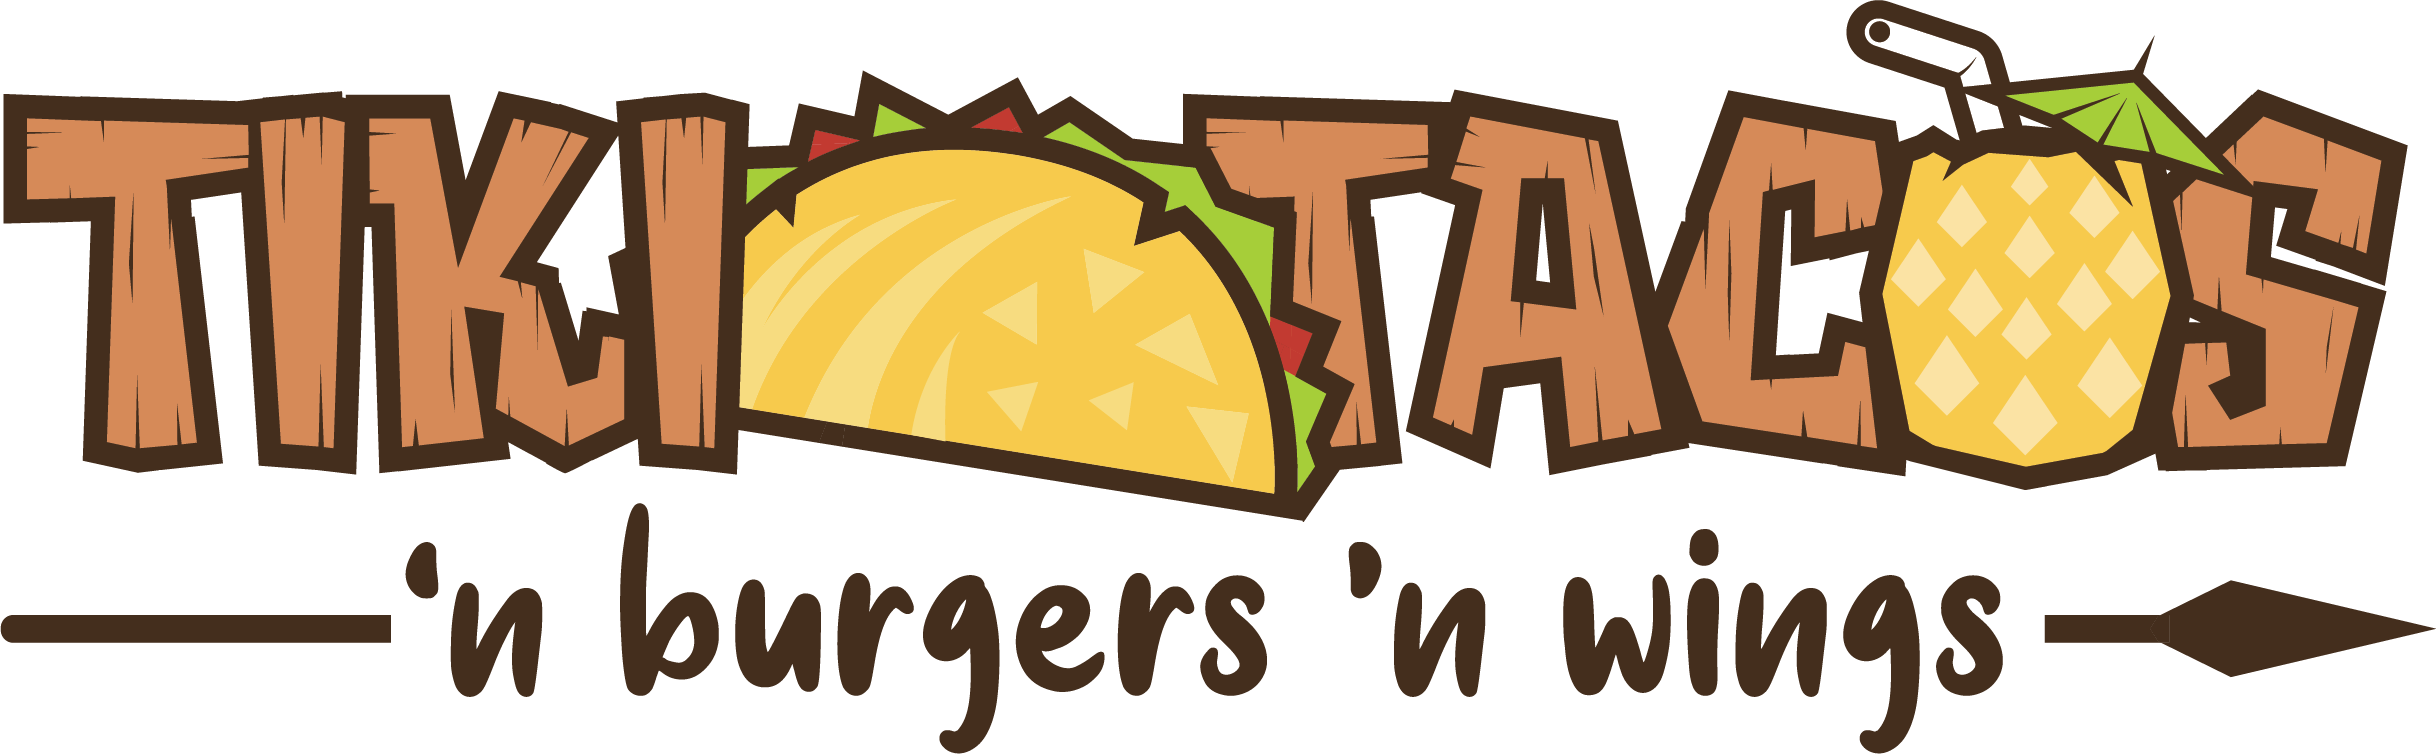 TIKI TACOS / Tacos Burgers Wings Iowa City